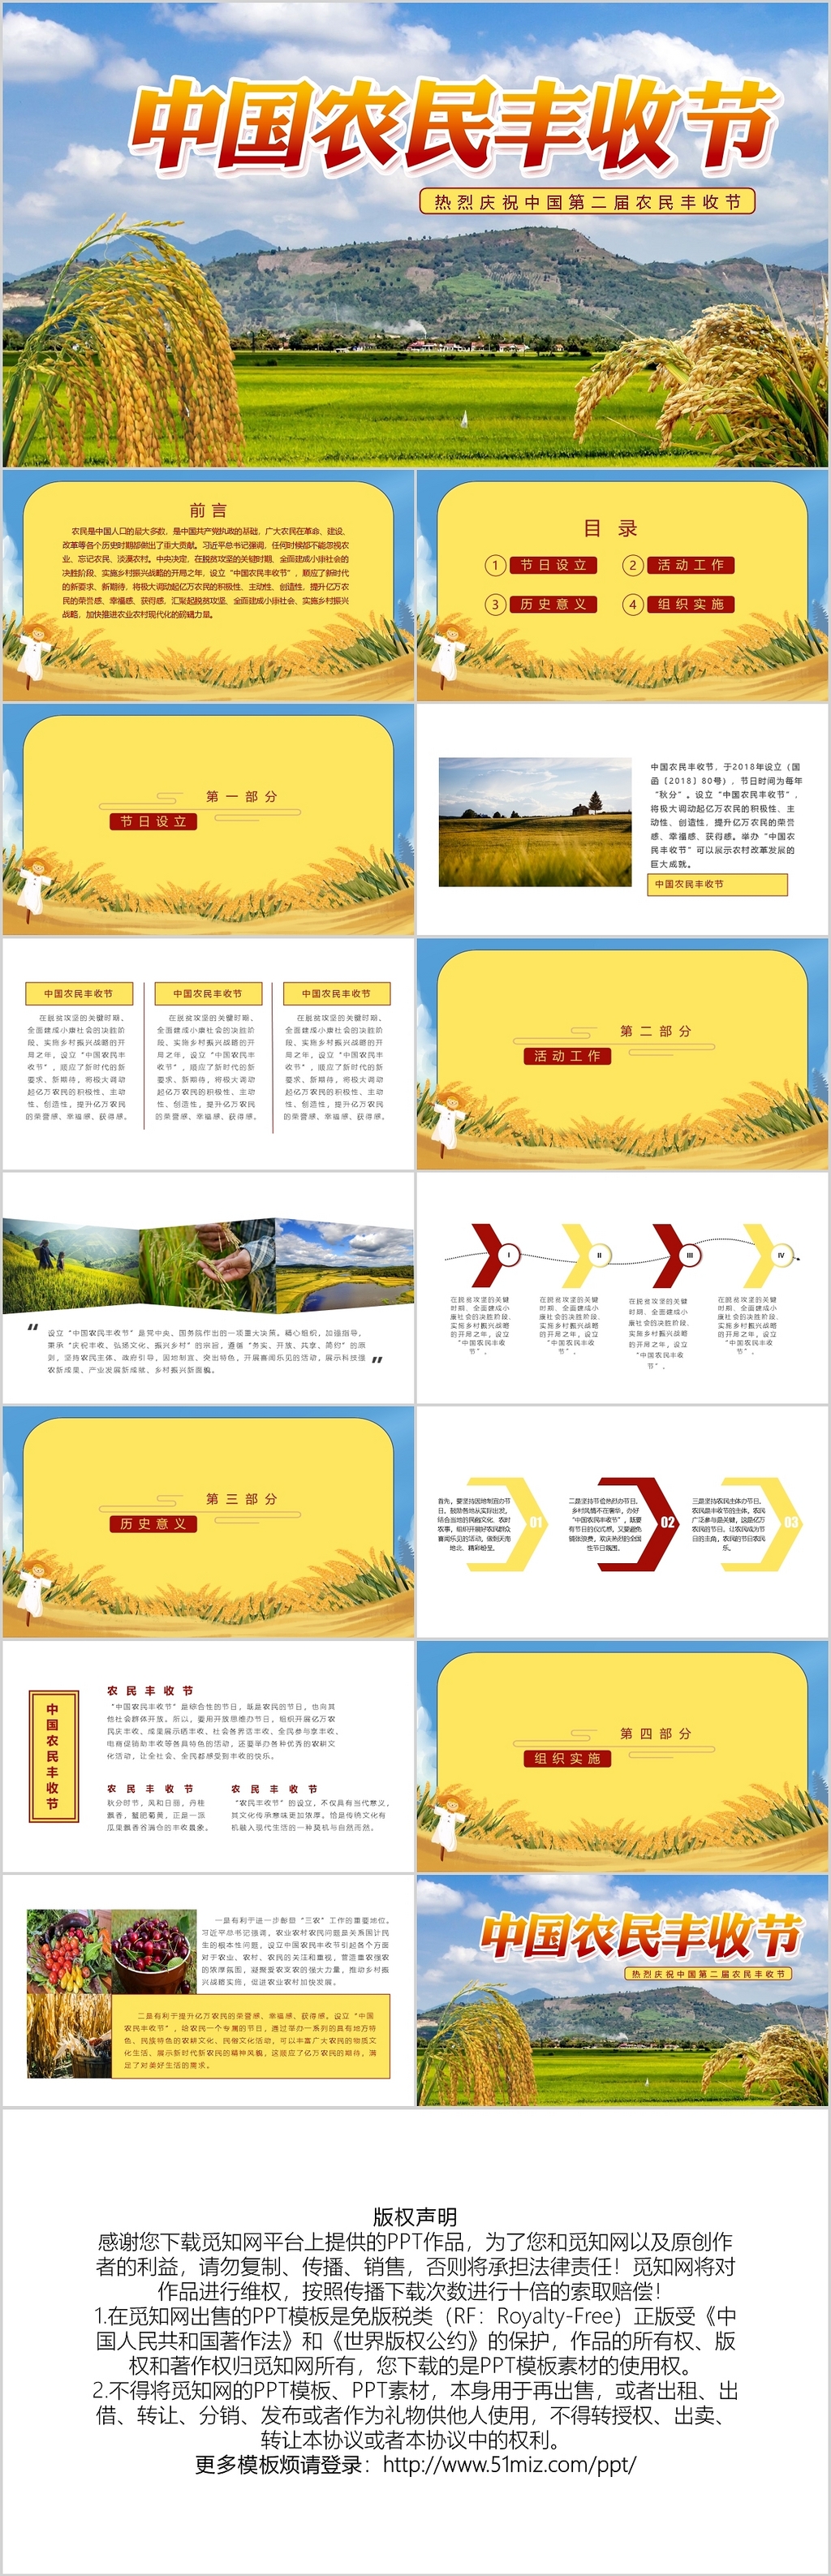 简约中国农民丰收节PPT模板宣传PPT动态PPT